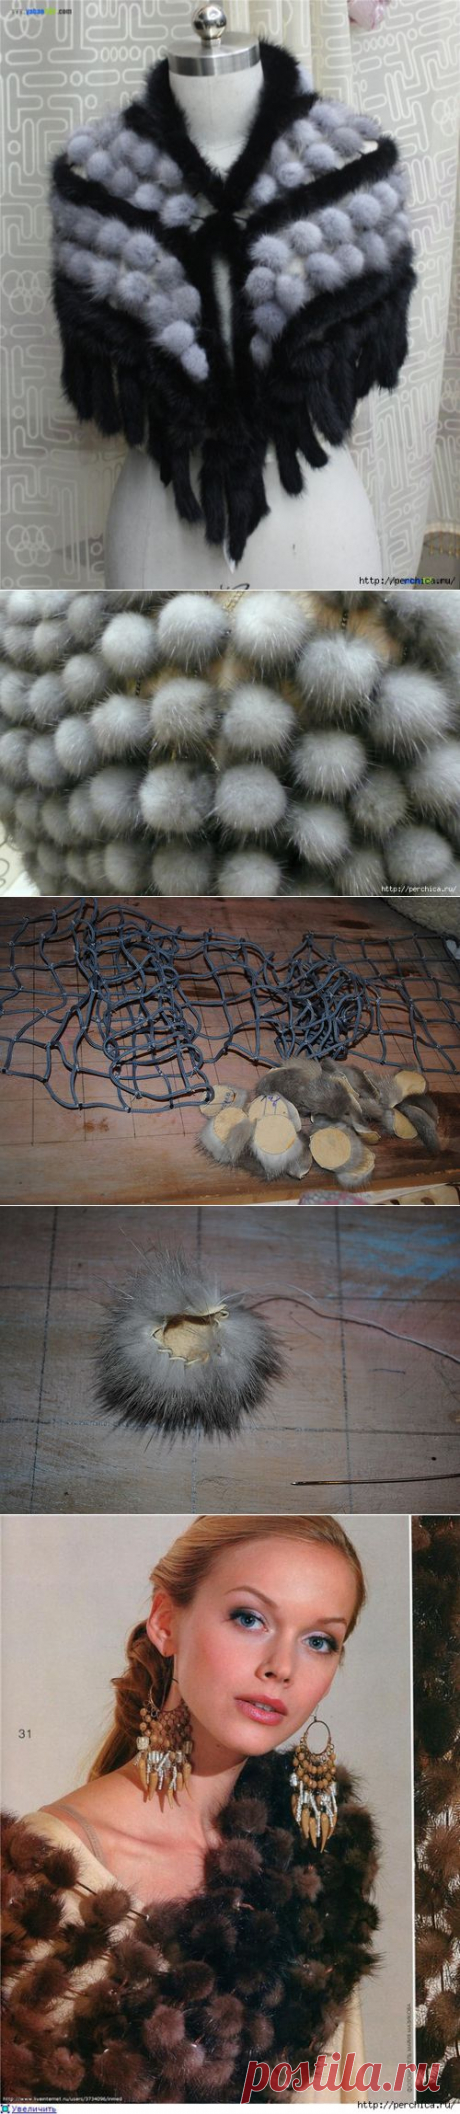 МК по созданию шарфа из меховых шариков на сетке